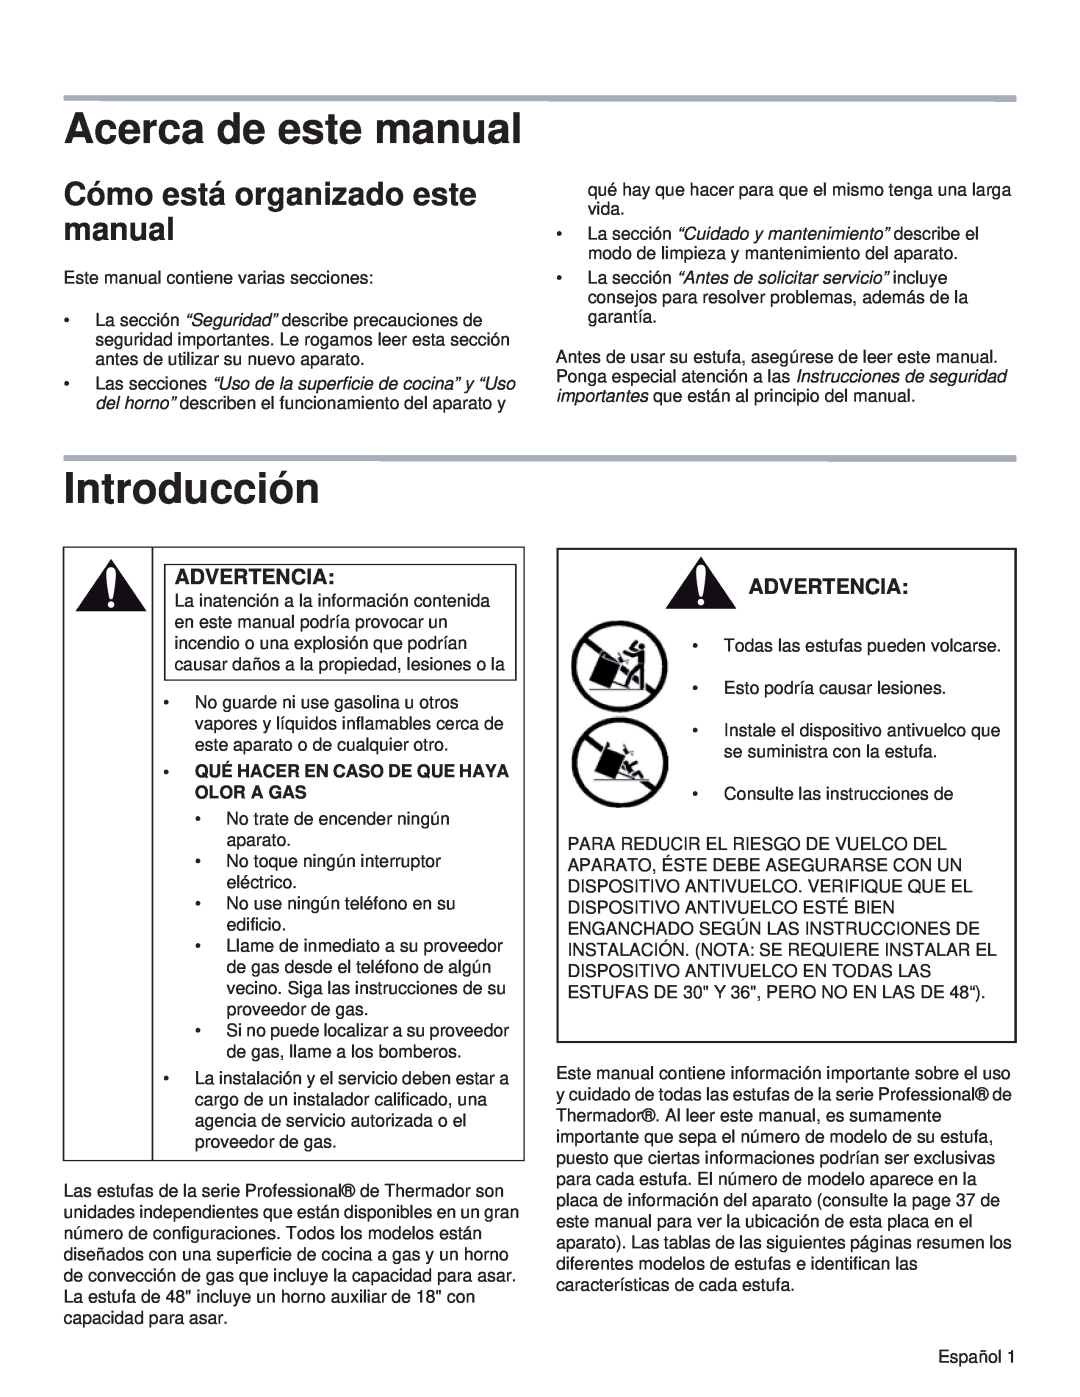 Thermador PRL30, PRL36, PRG48, PRG30 Acerca de este manual, Introducción, Cómo está organizado este manual, Advertencia 